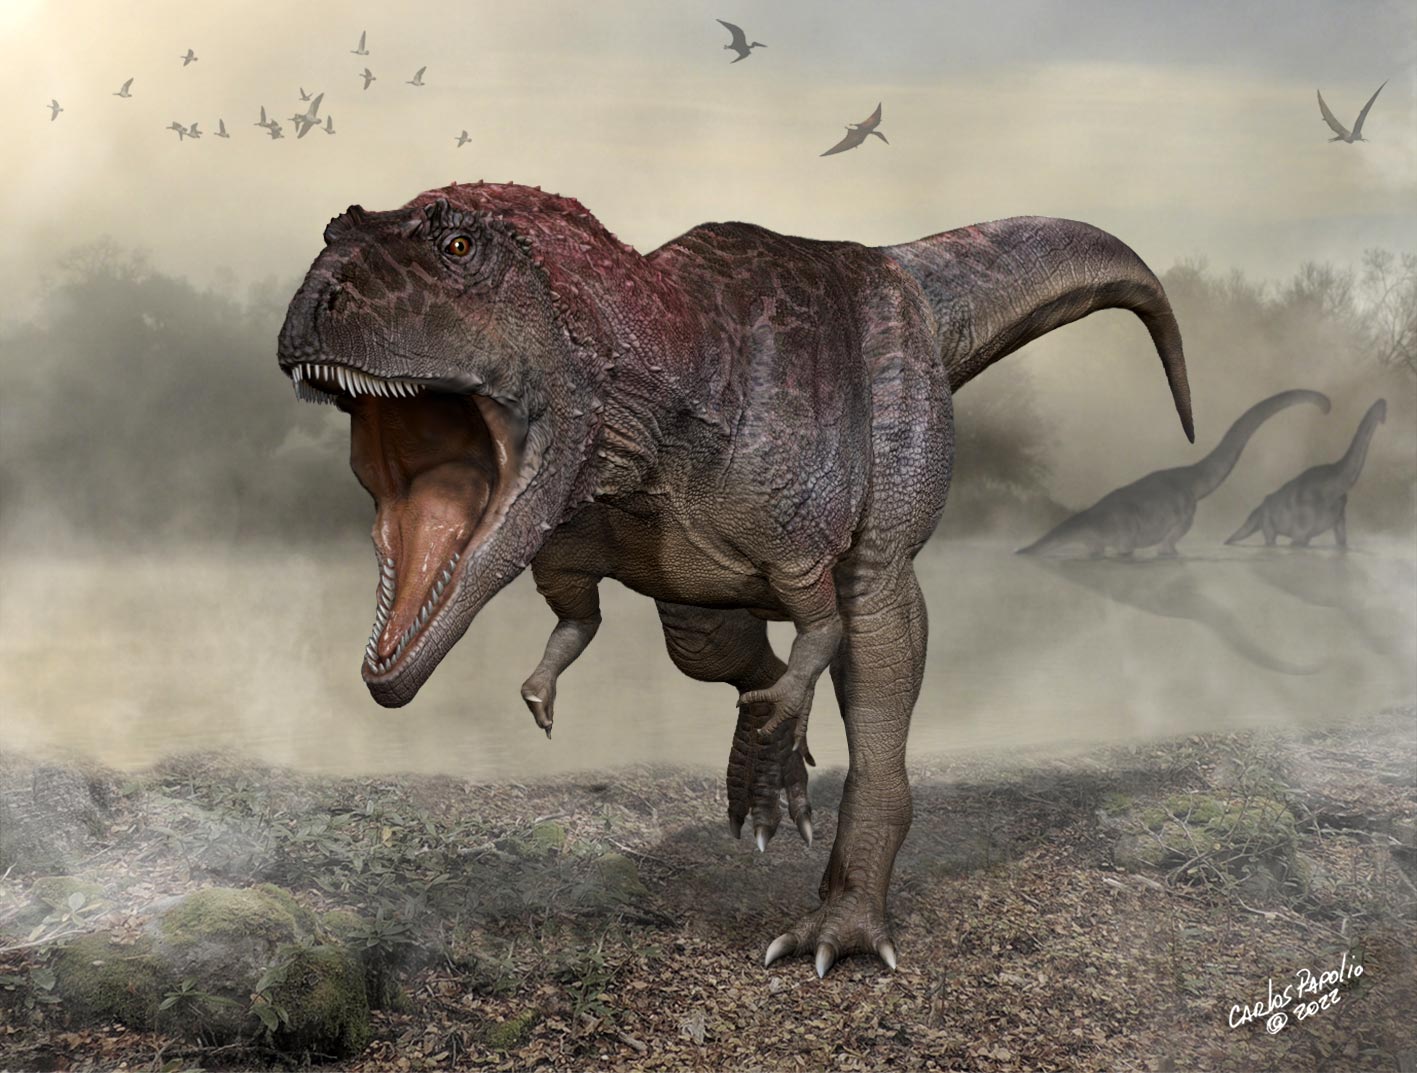 Descubierto nuevo dinosaurio carnívoro gigante con brazos diminutos como T. rex